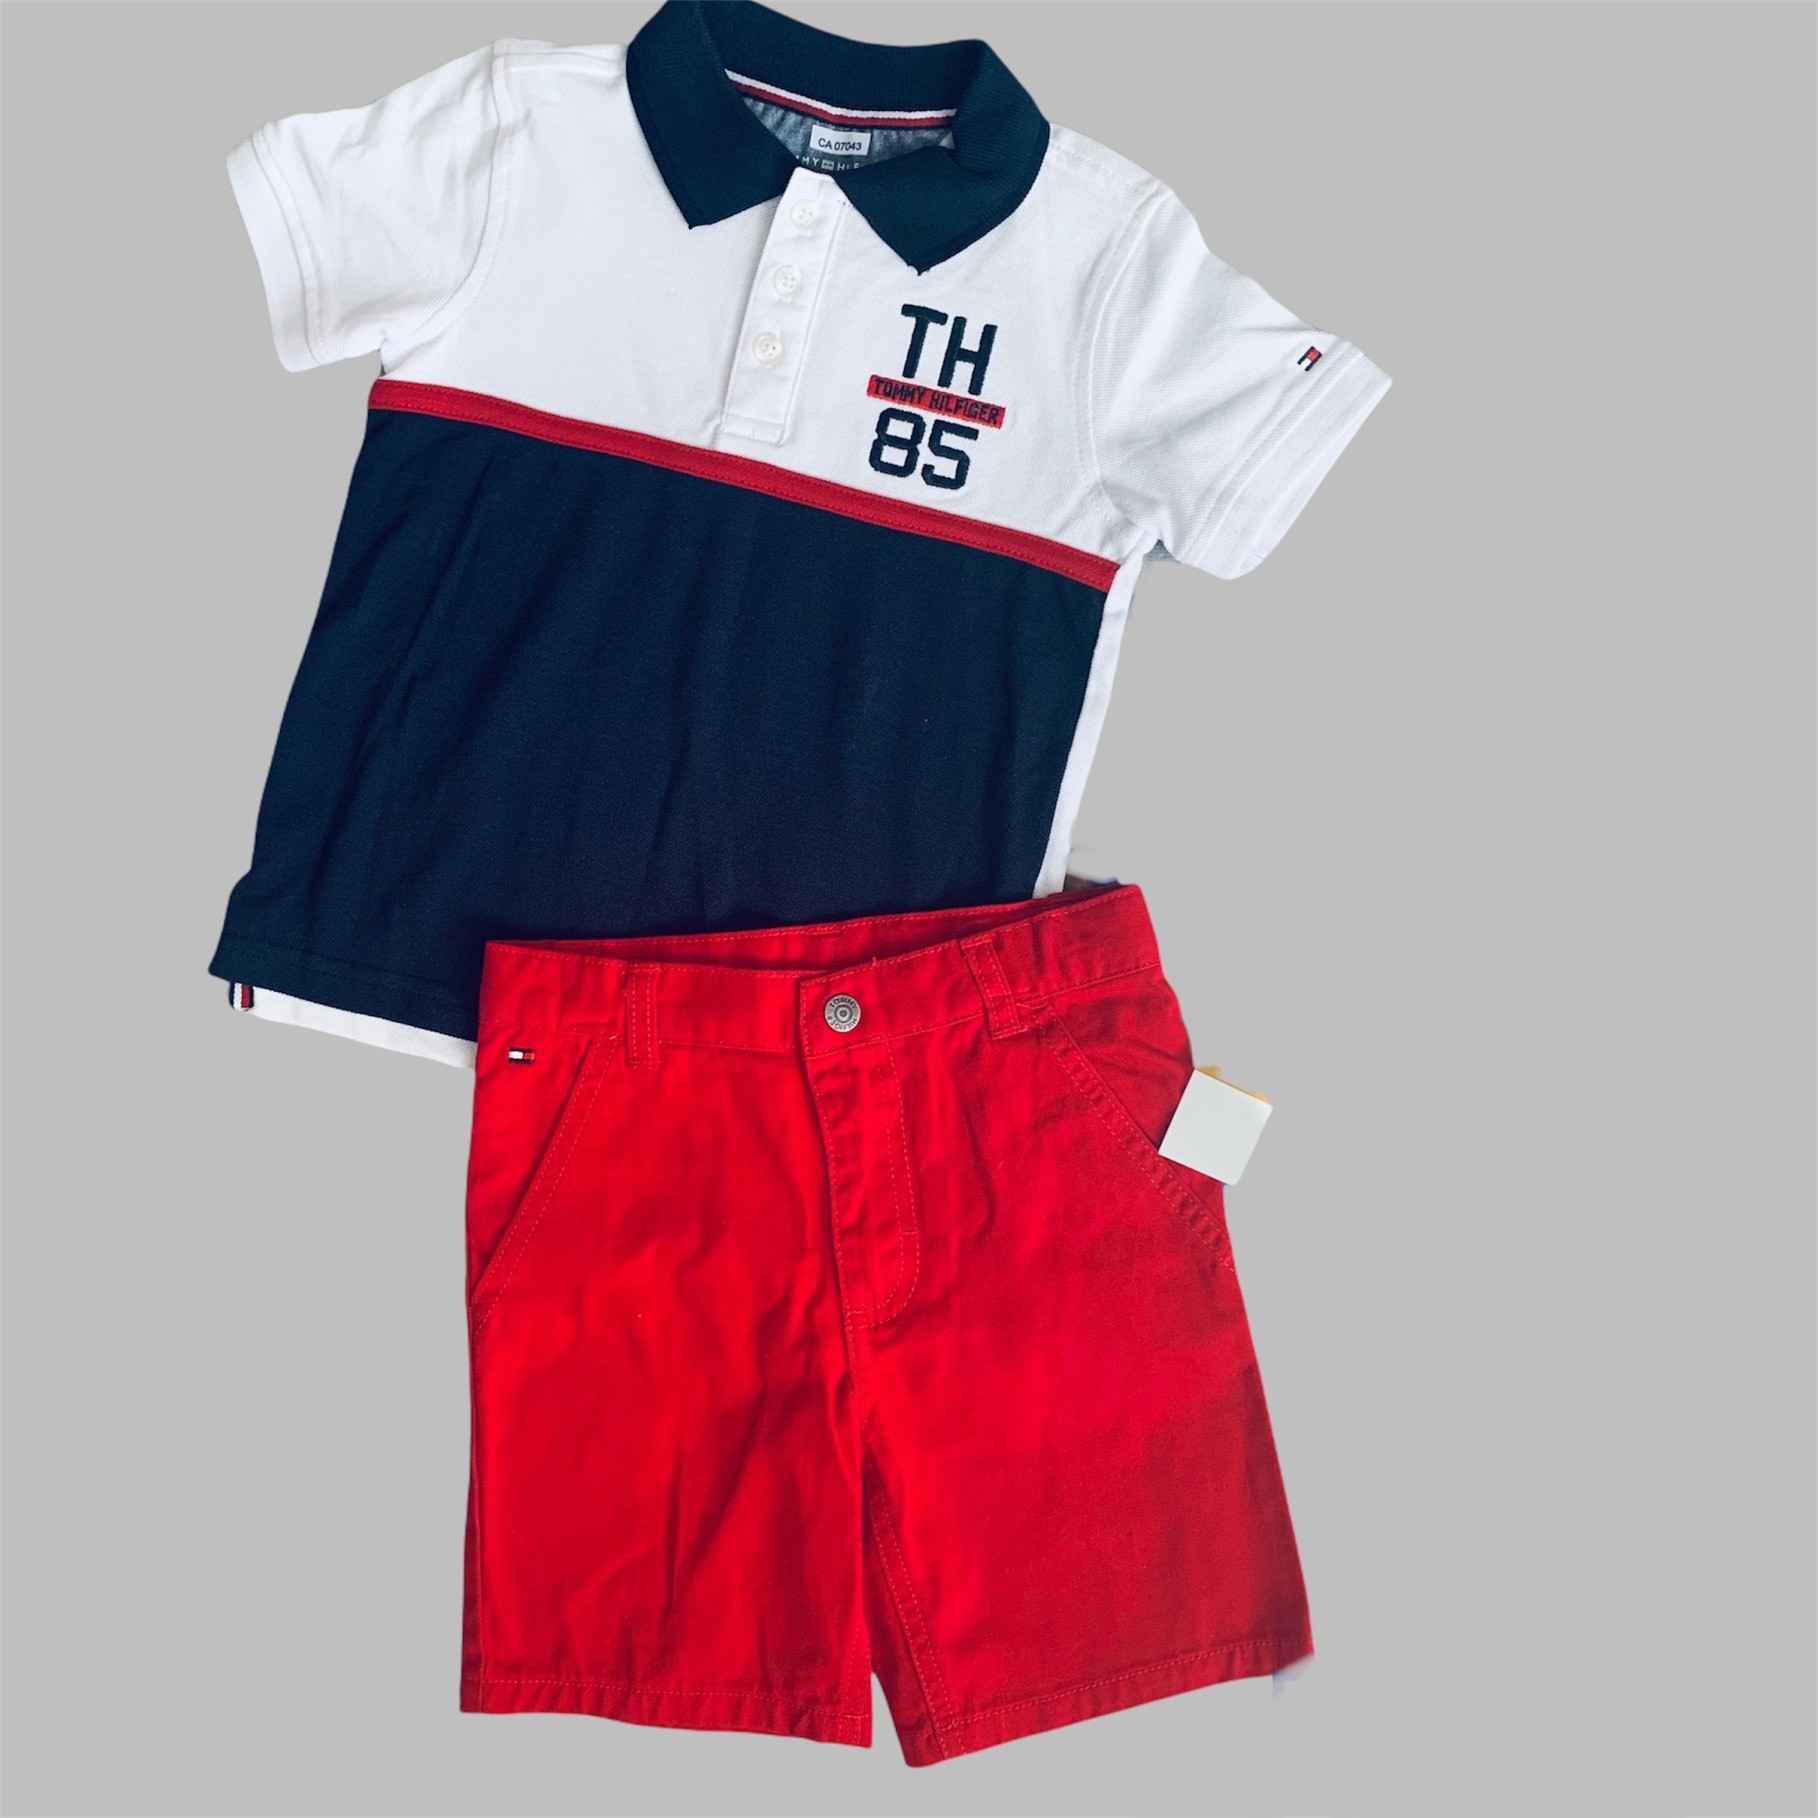 

Комплект (поло + шорты) Tommy Hilfiger 98 см Красный/белый